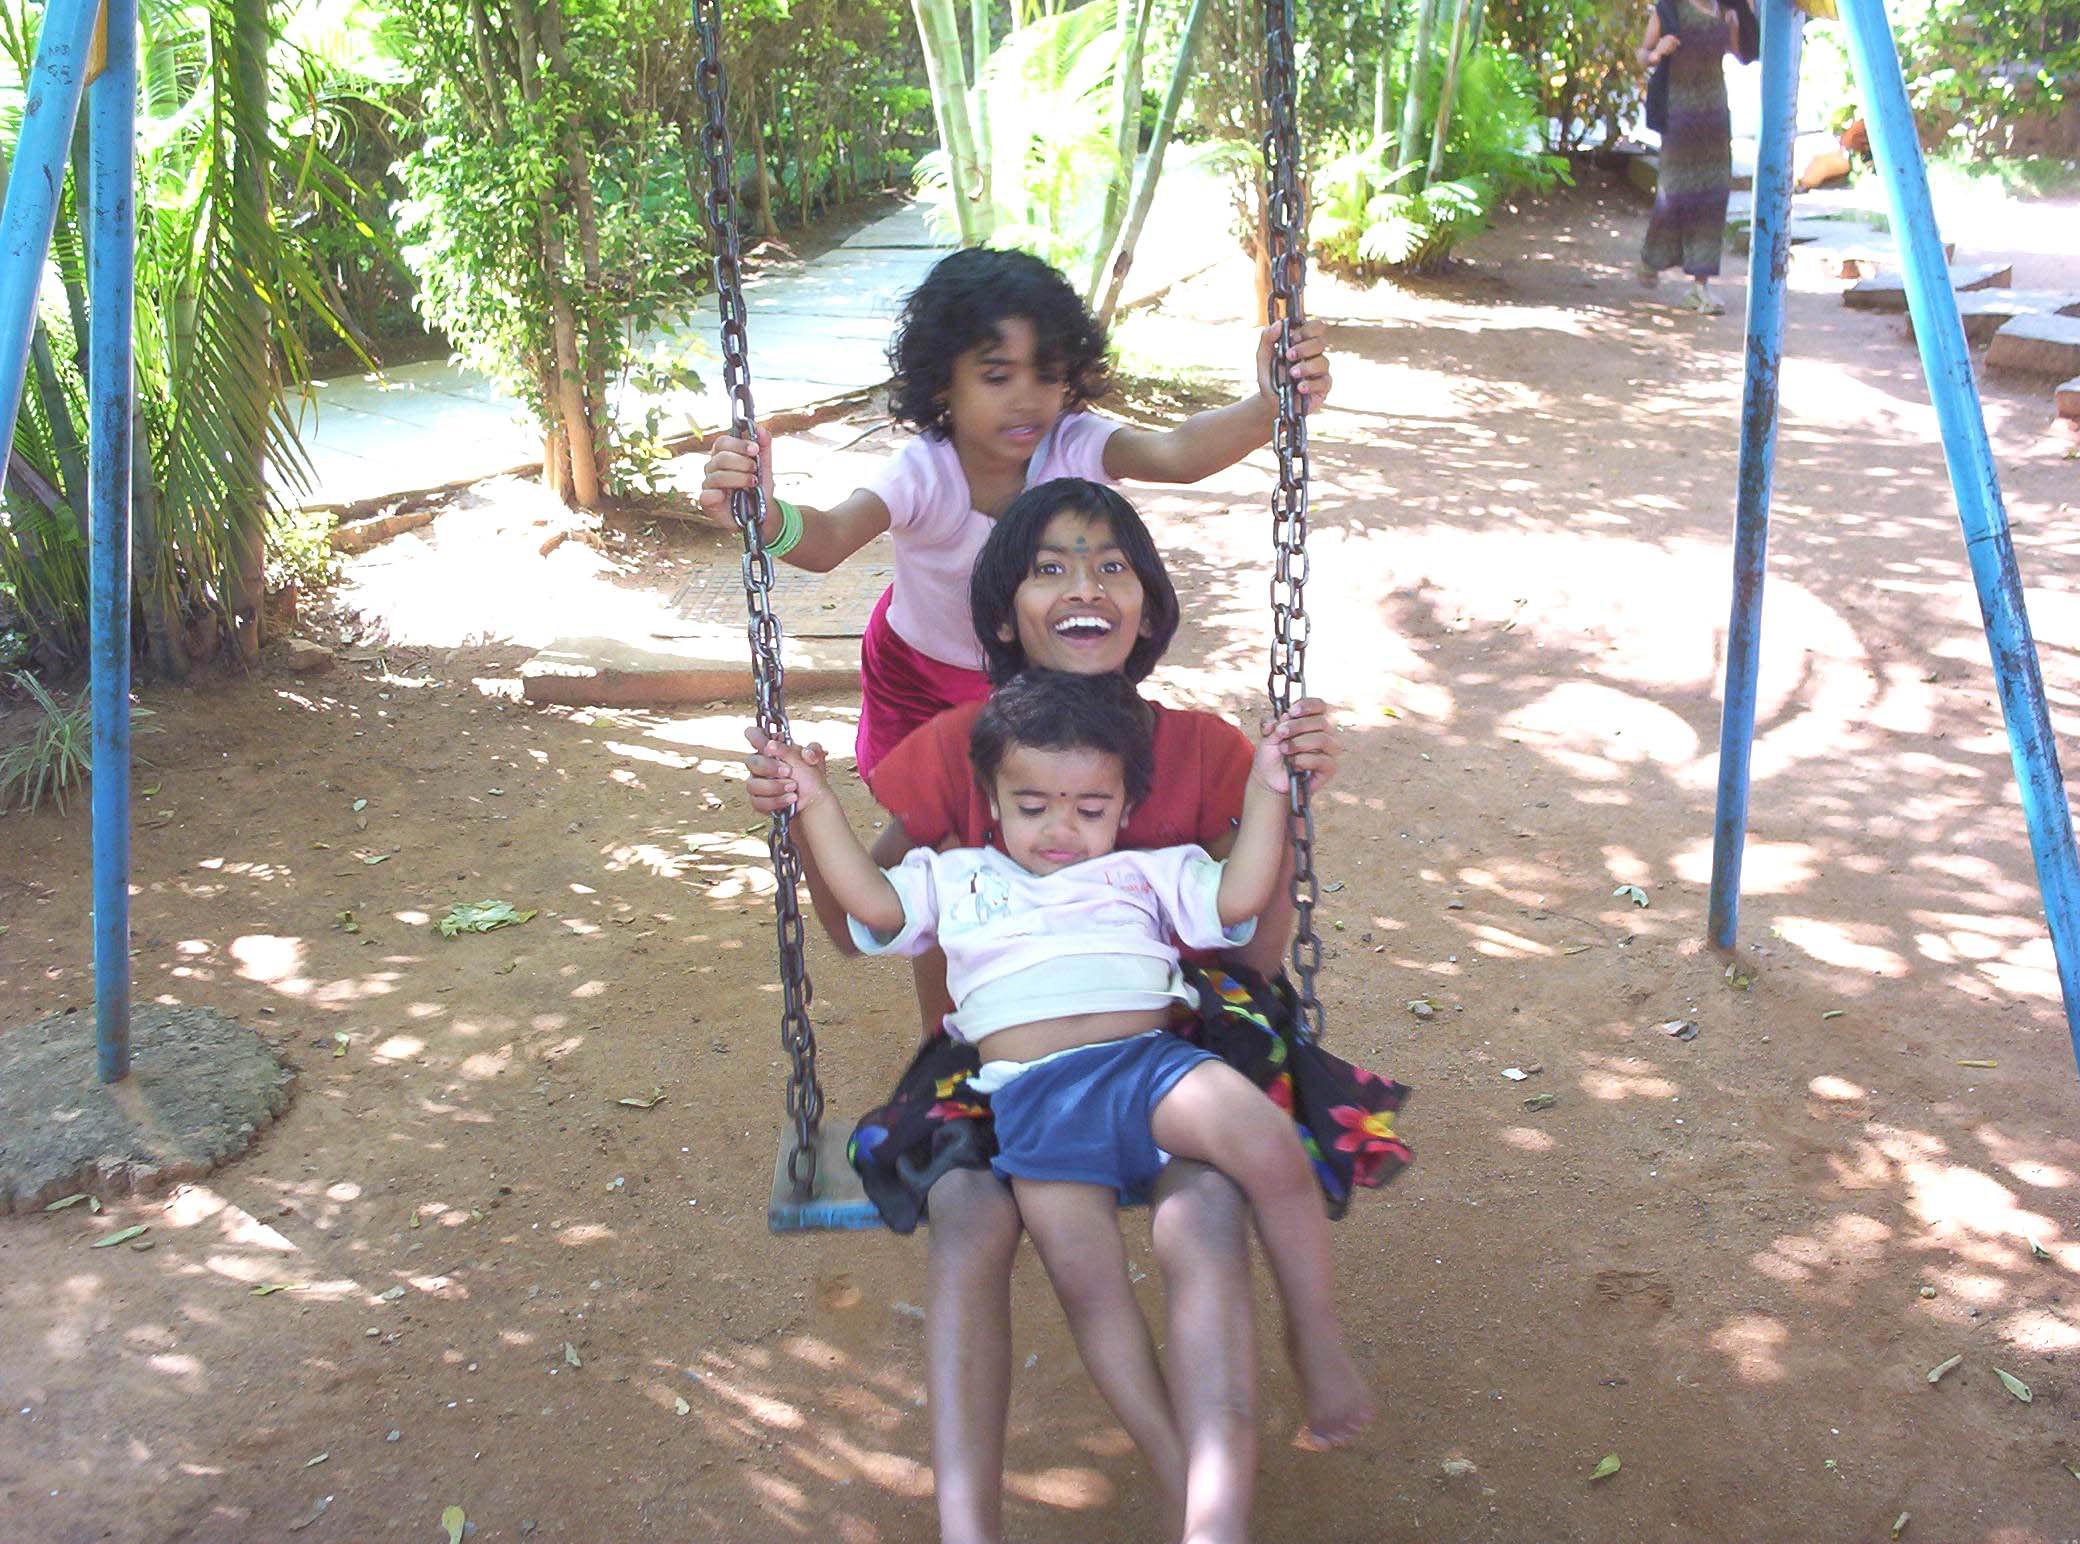 Fun in the swing photo